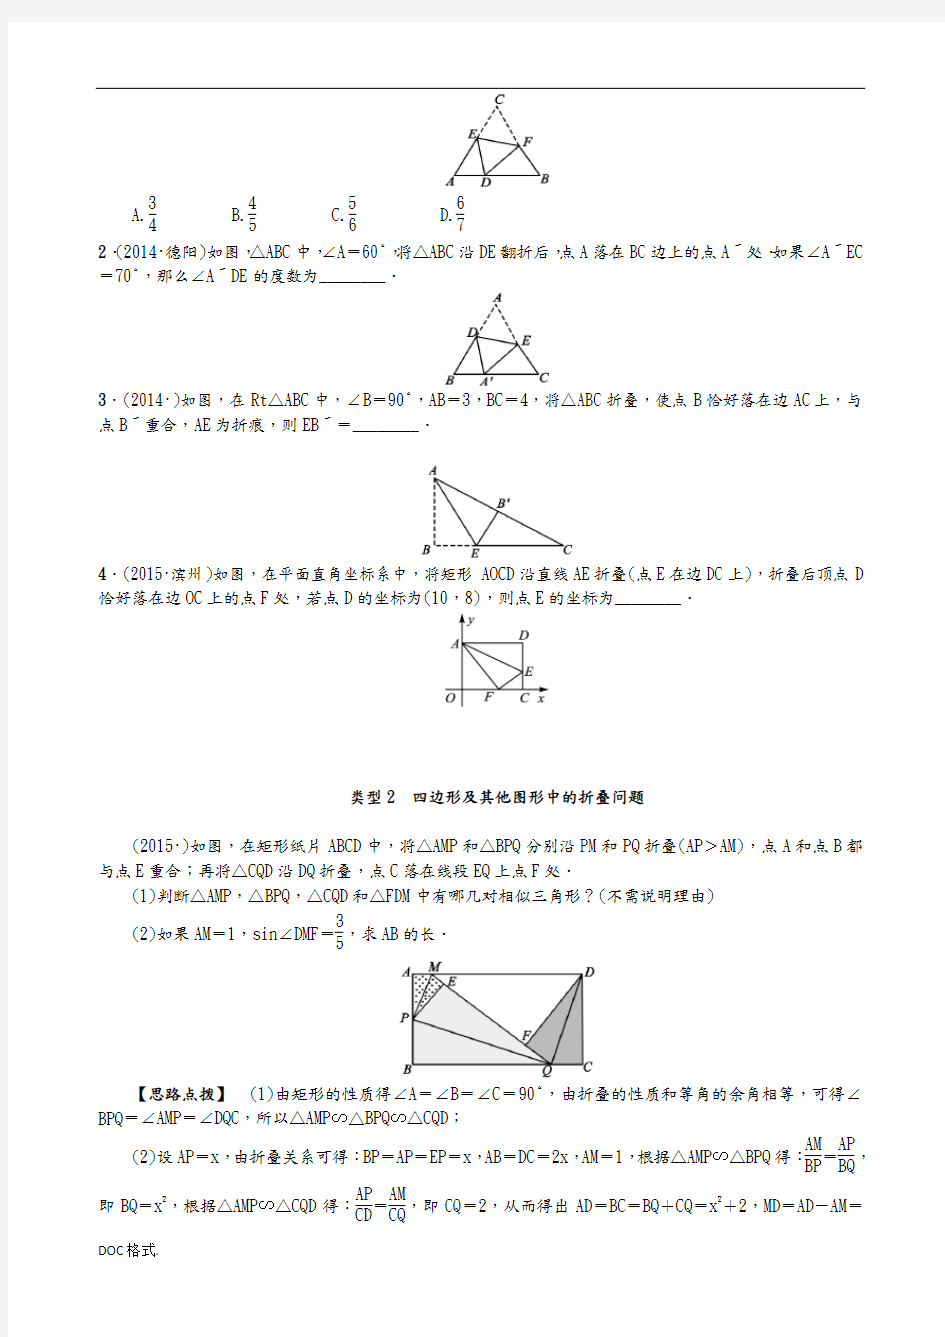 专题复习(五)_图形的折叠问题